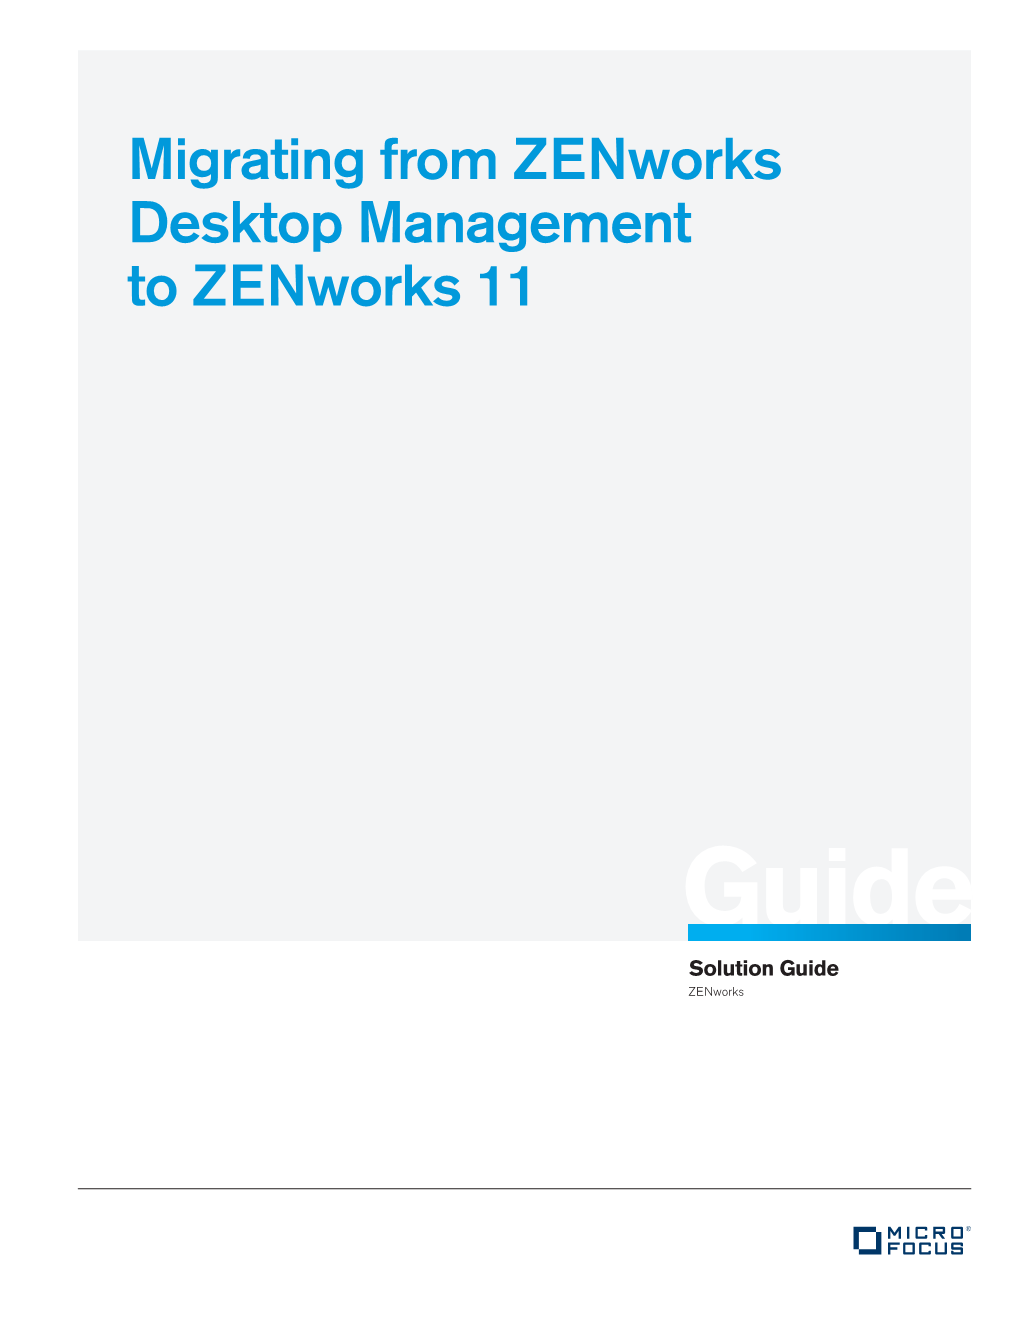 Migrating from Zenworks Desktop Management to Zenworks 11